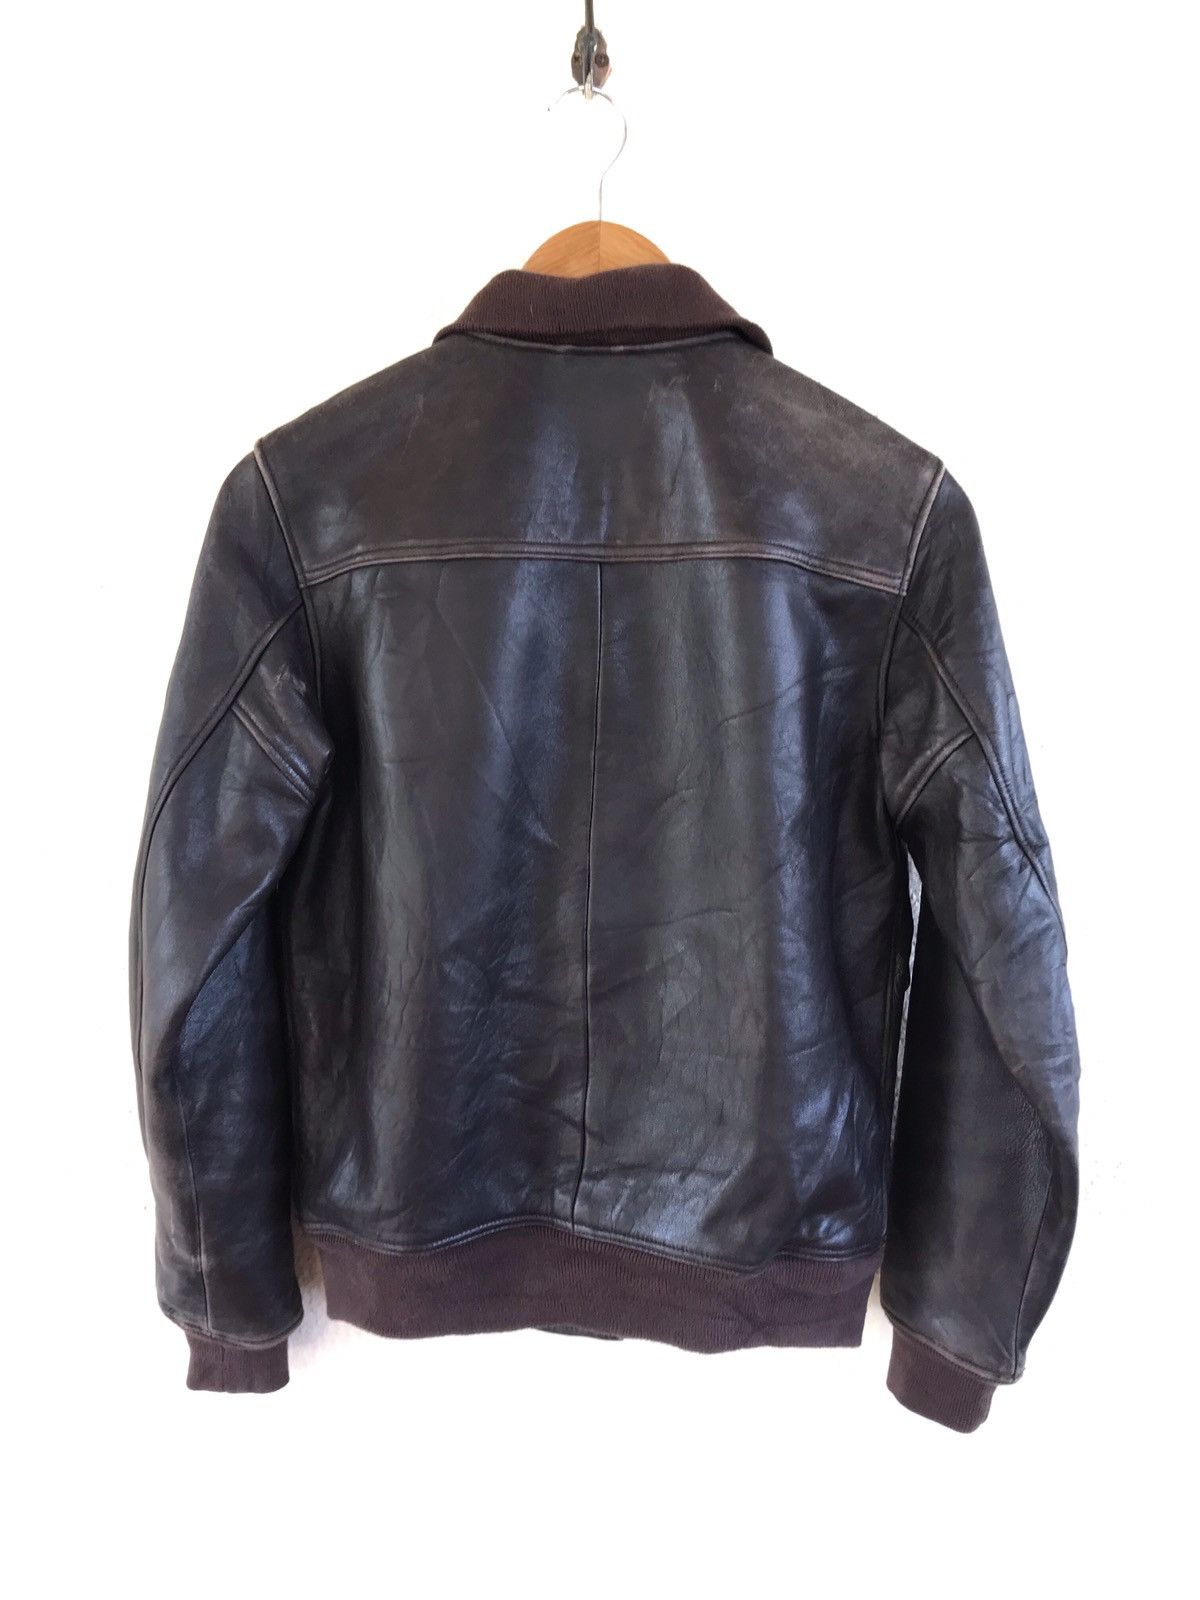 Neighborhood Leather Jacket - 11